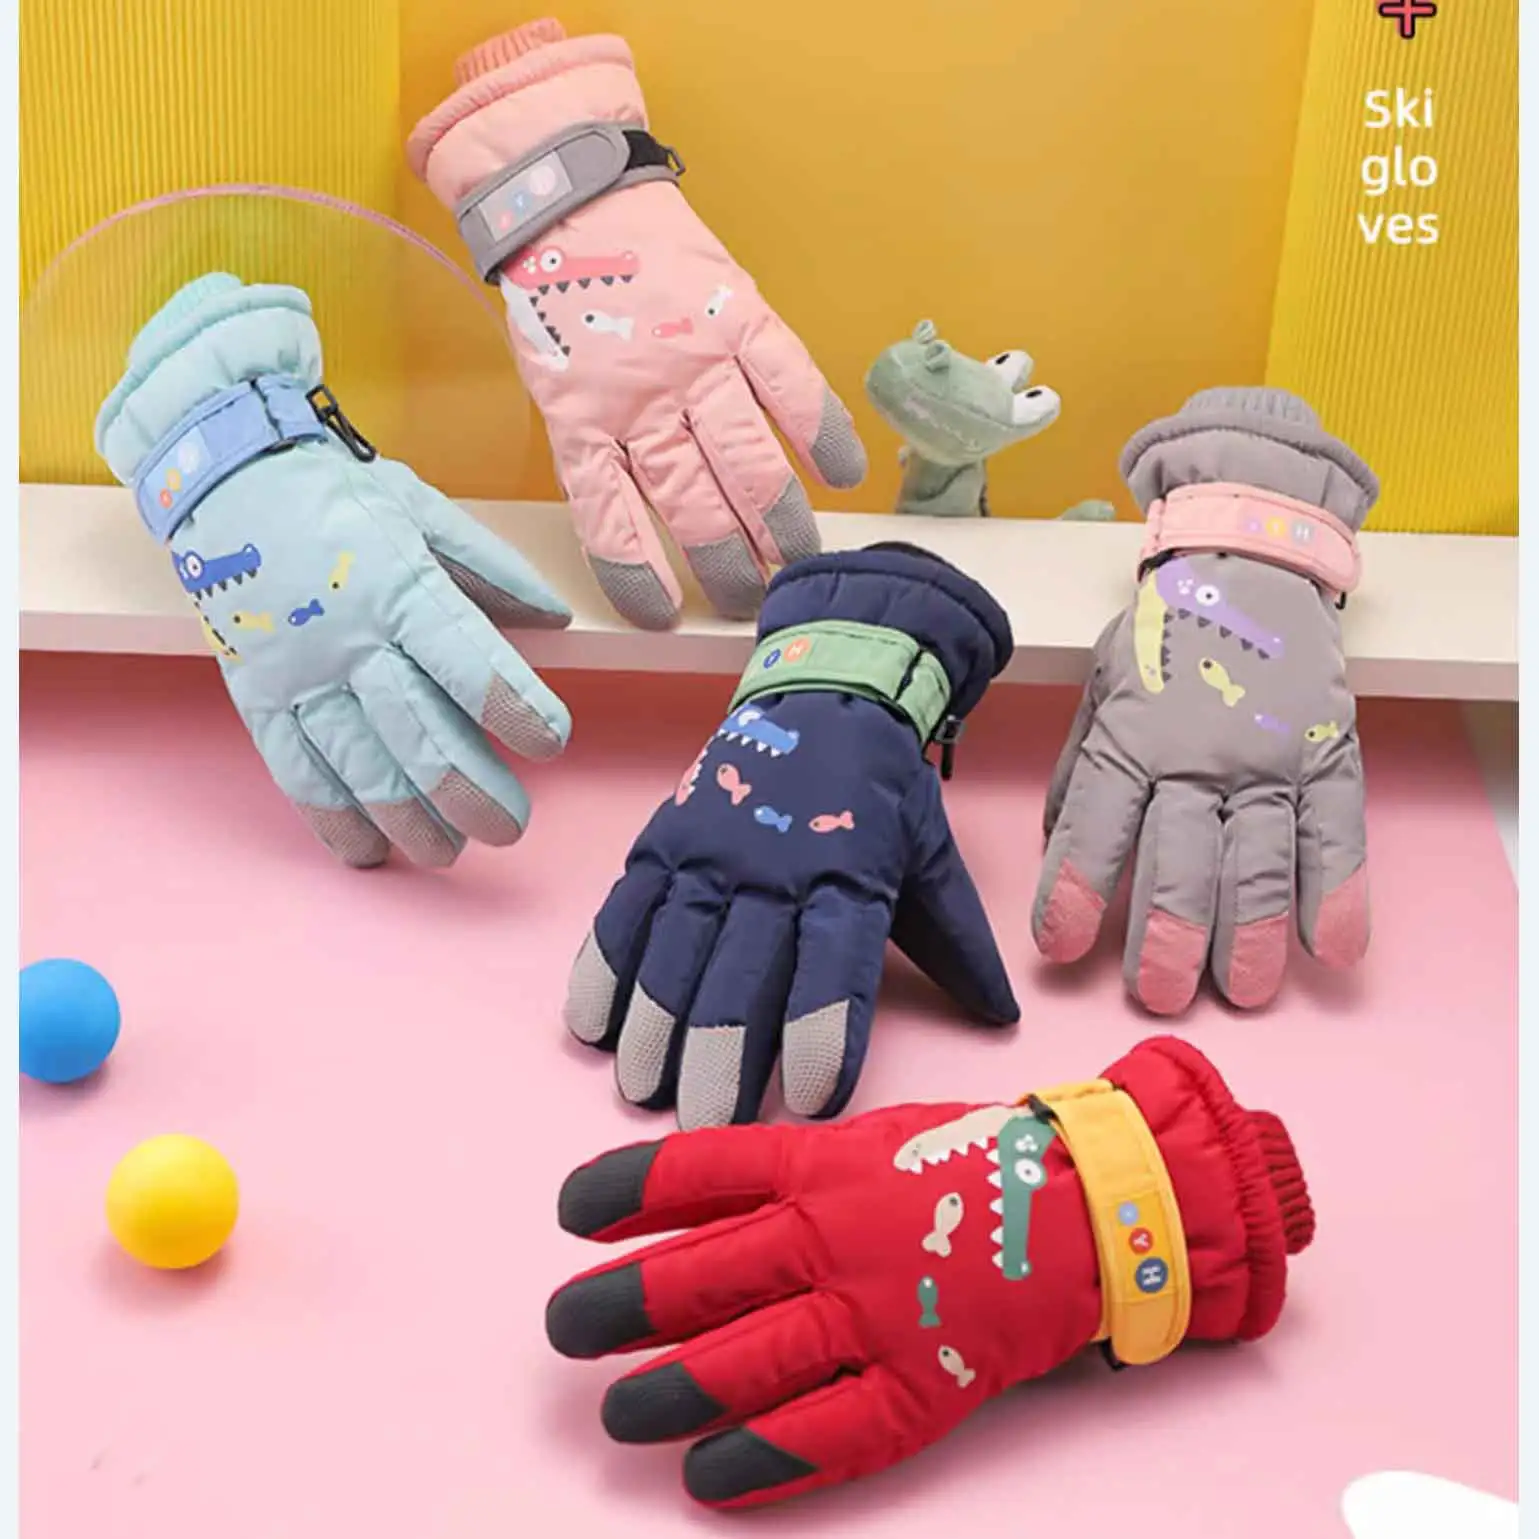 How to choose children's warm gloves?